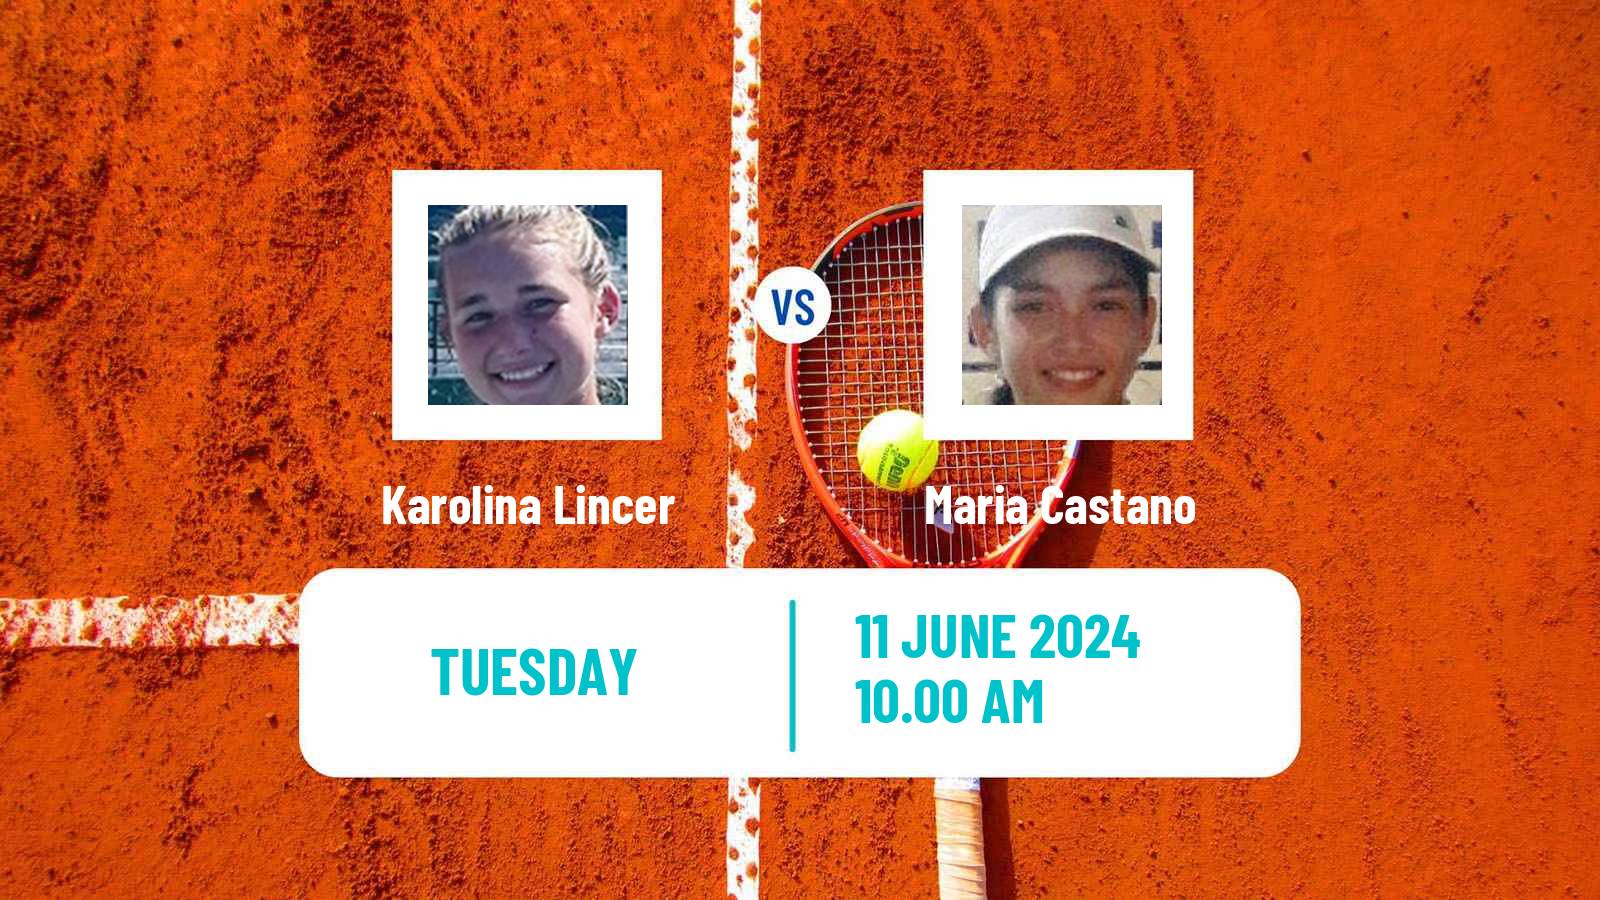 Tennis ITF W15 Santo Domingo 2 Women Karolina Lincer - Maria Castano